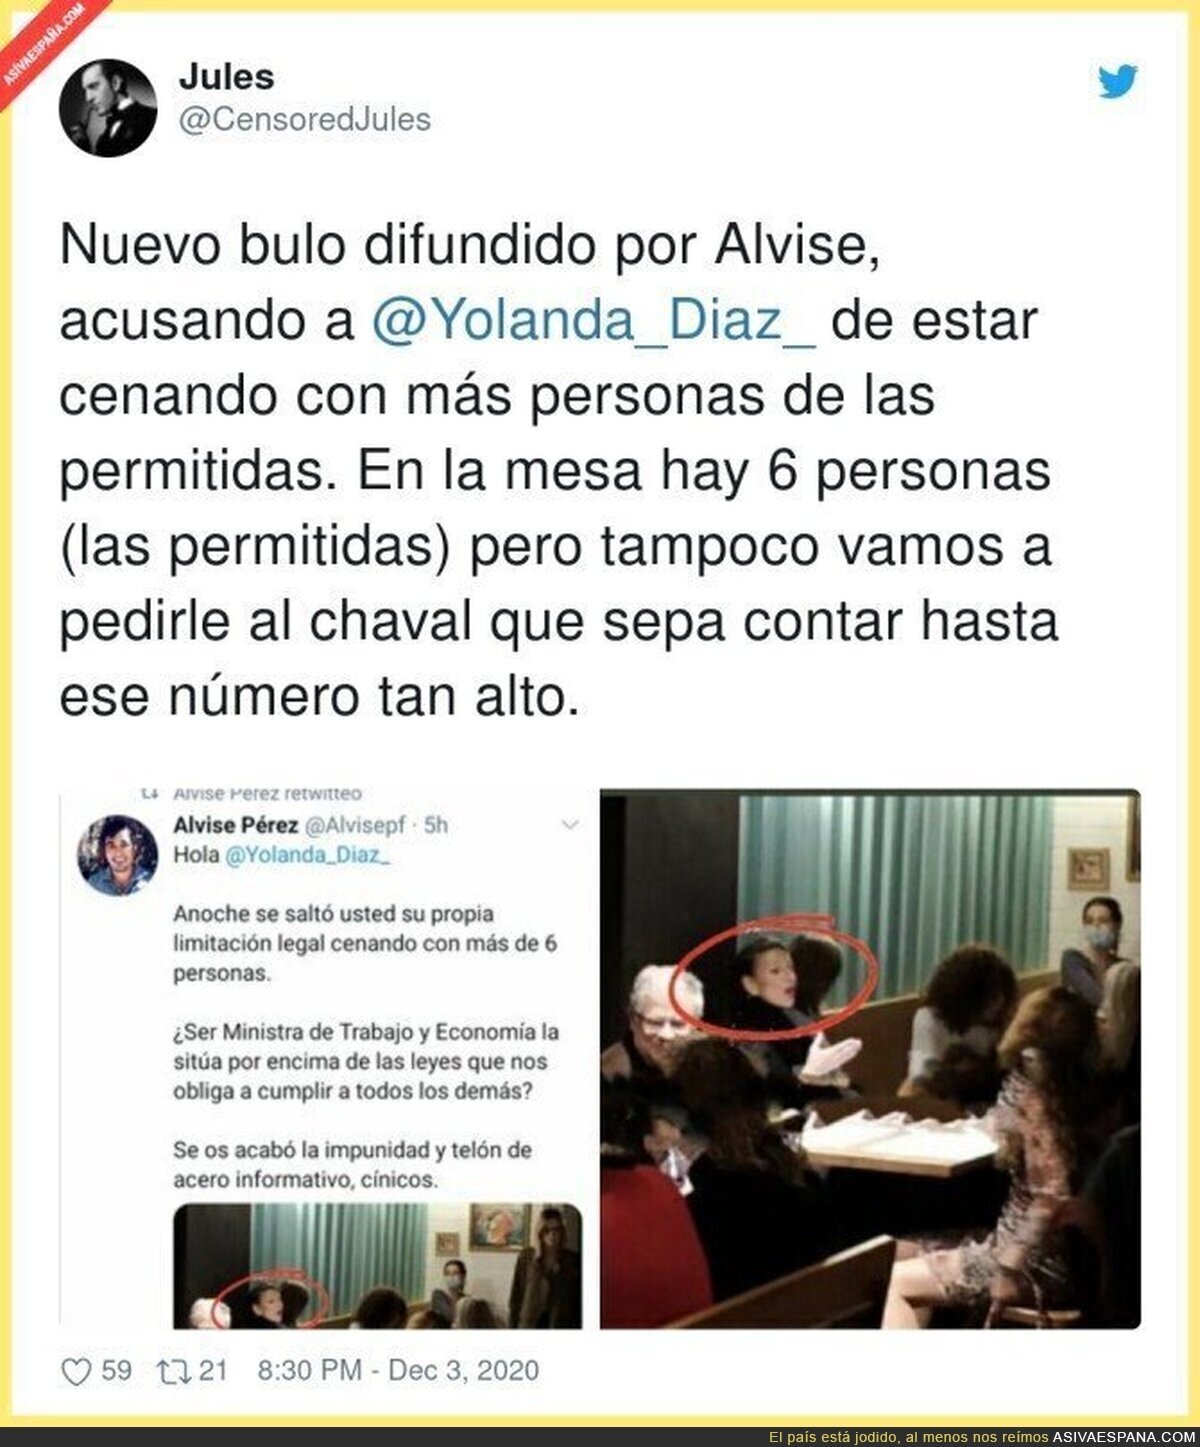 Alvise Pérez vuelve a difundir bulos